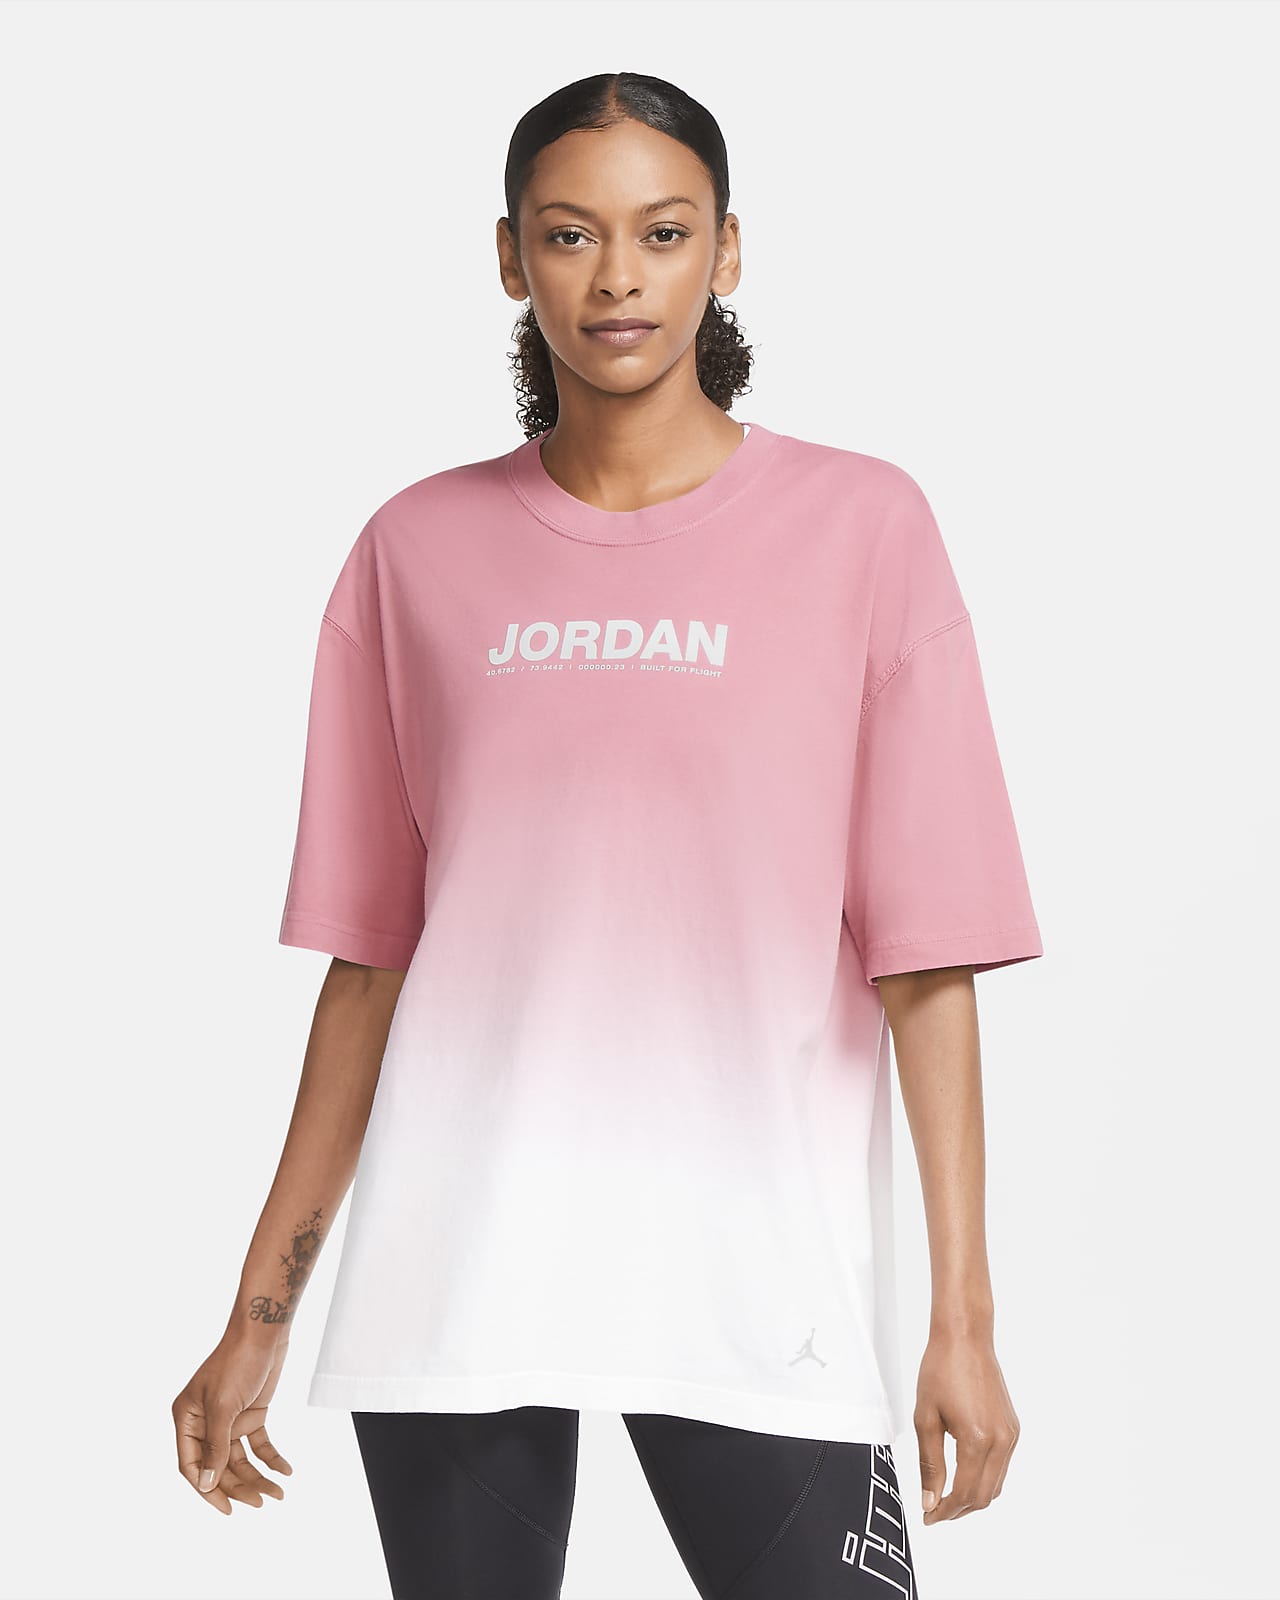 white and pink jordan shirt